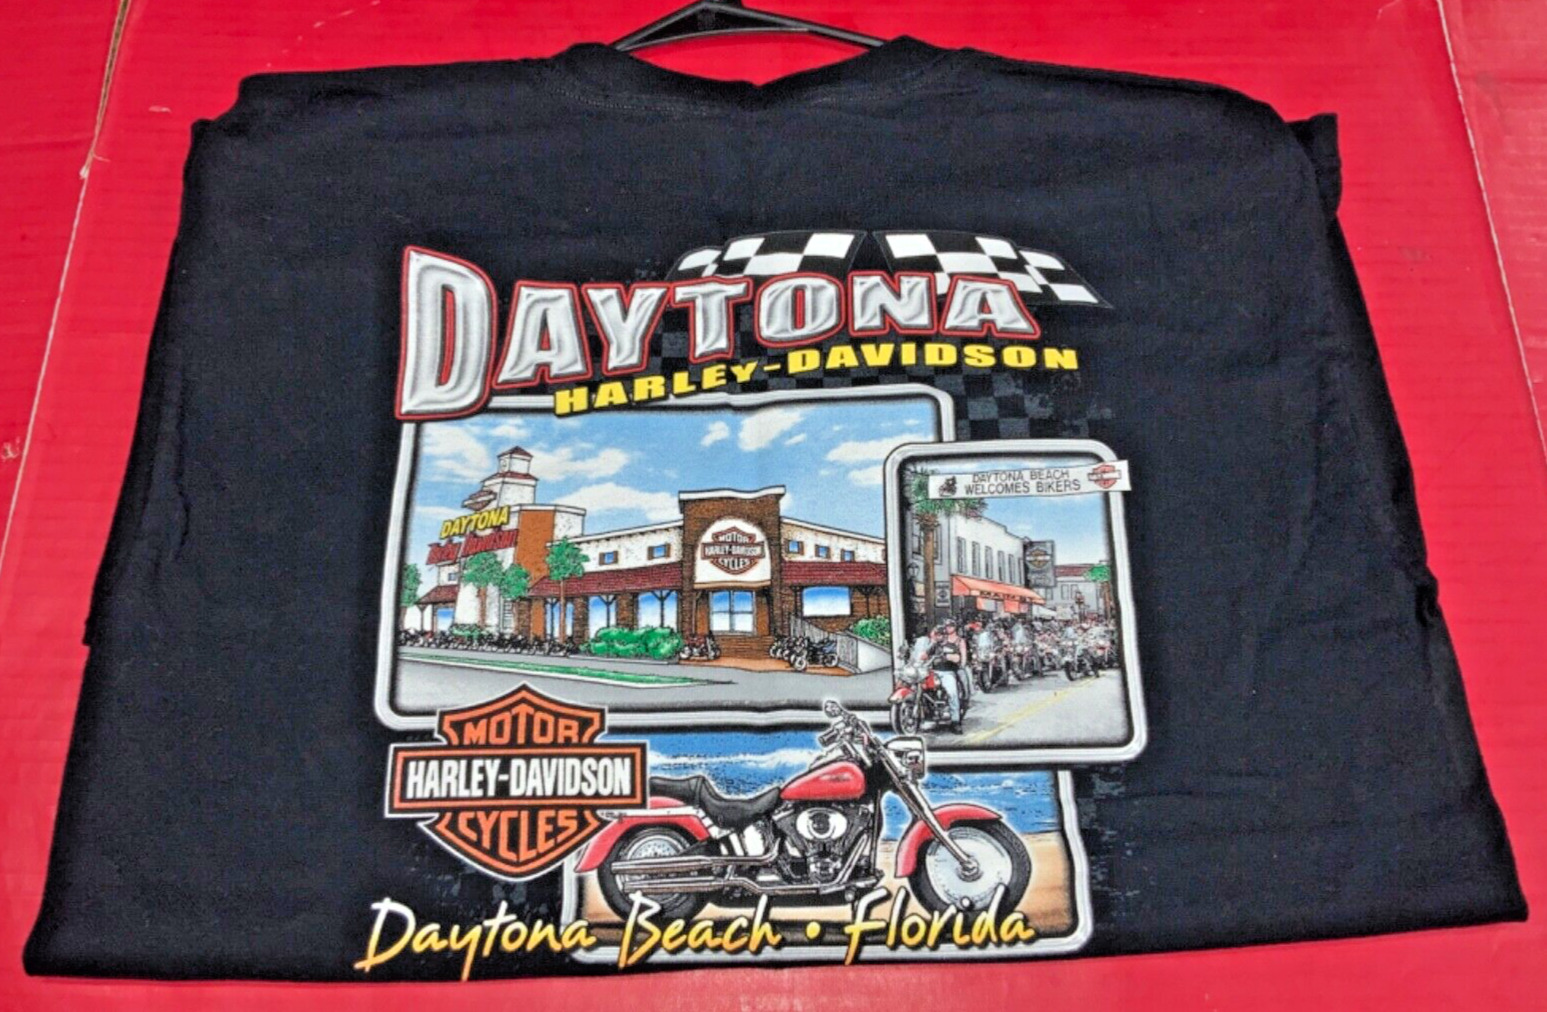 2005 Harley Davidson Daytona Bike Week T-Shirt - LARGE - AS IS